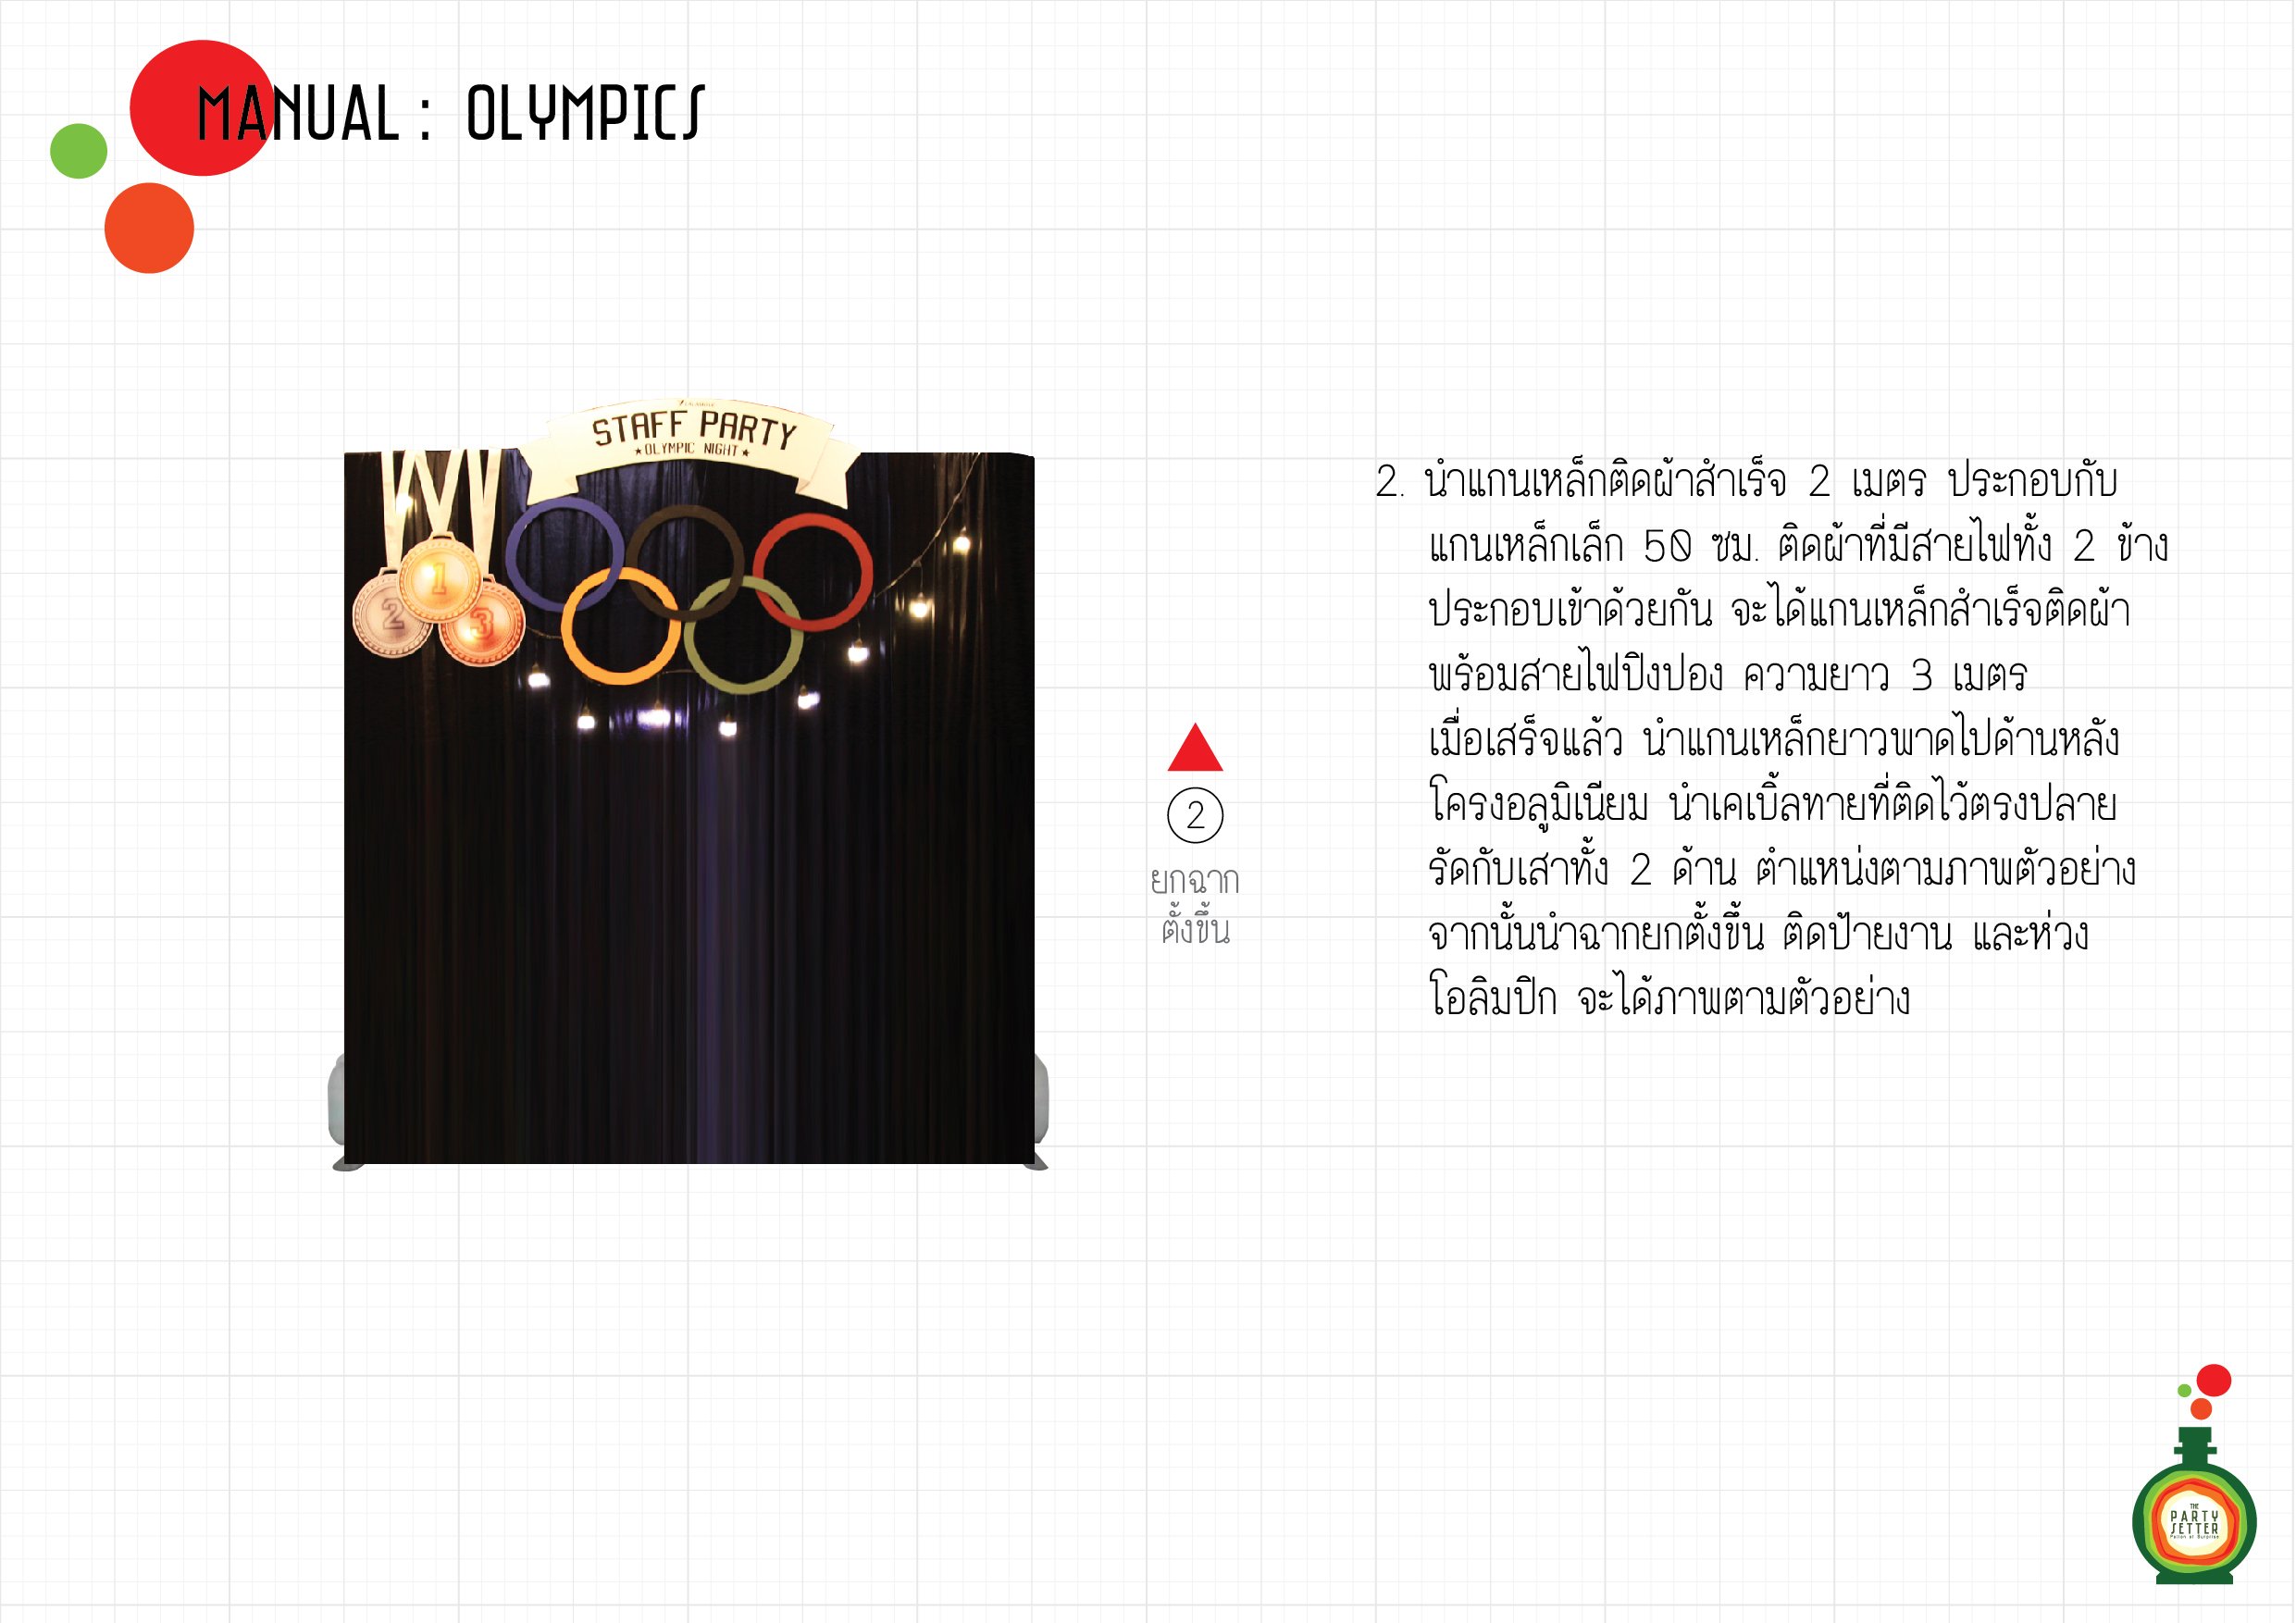 Manual_Olympics-02-01.jpg